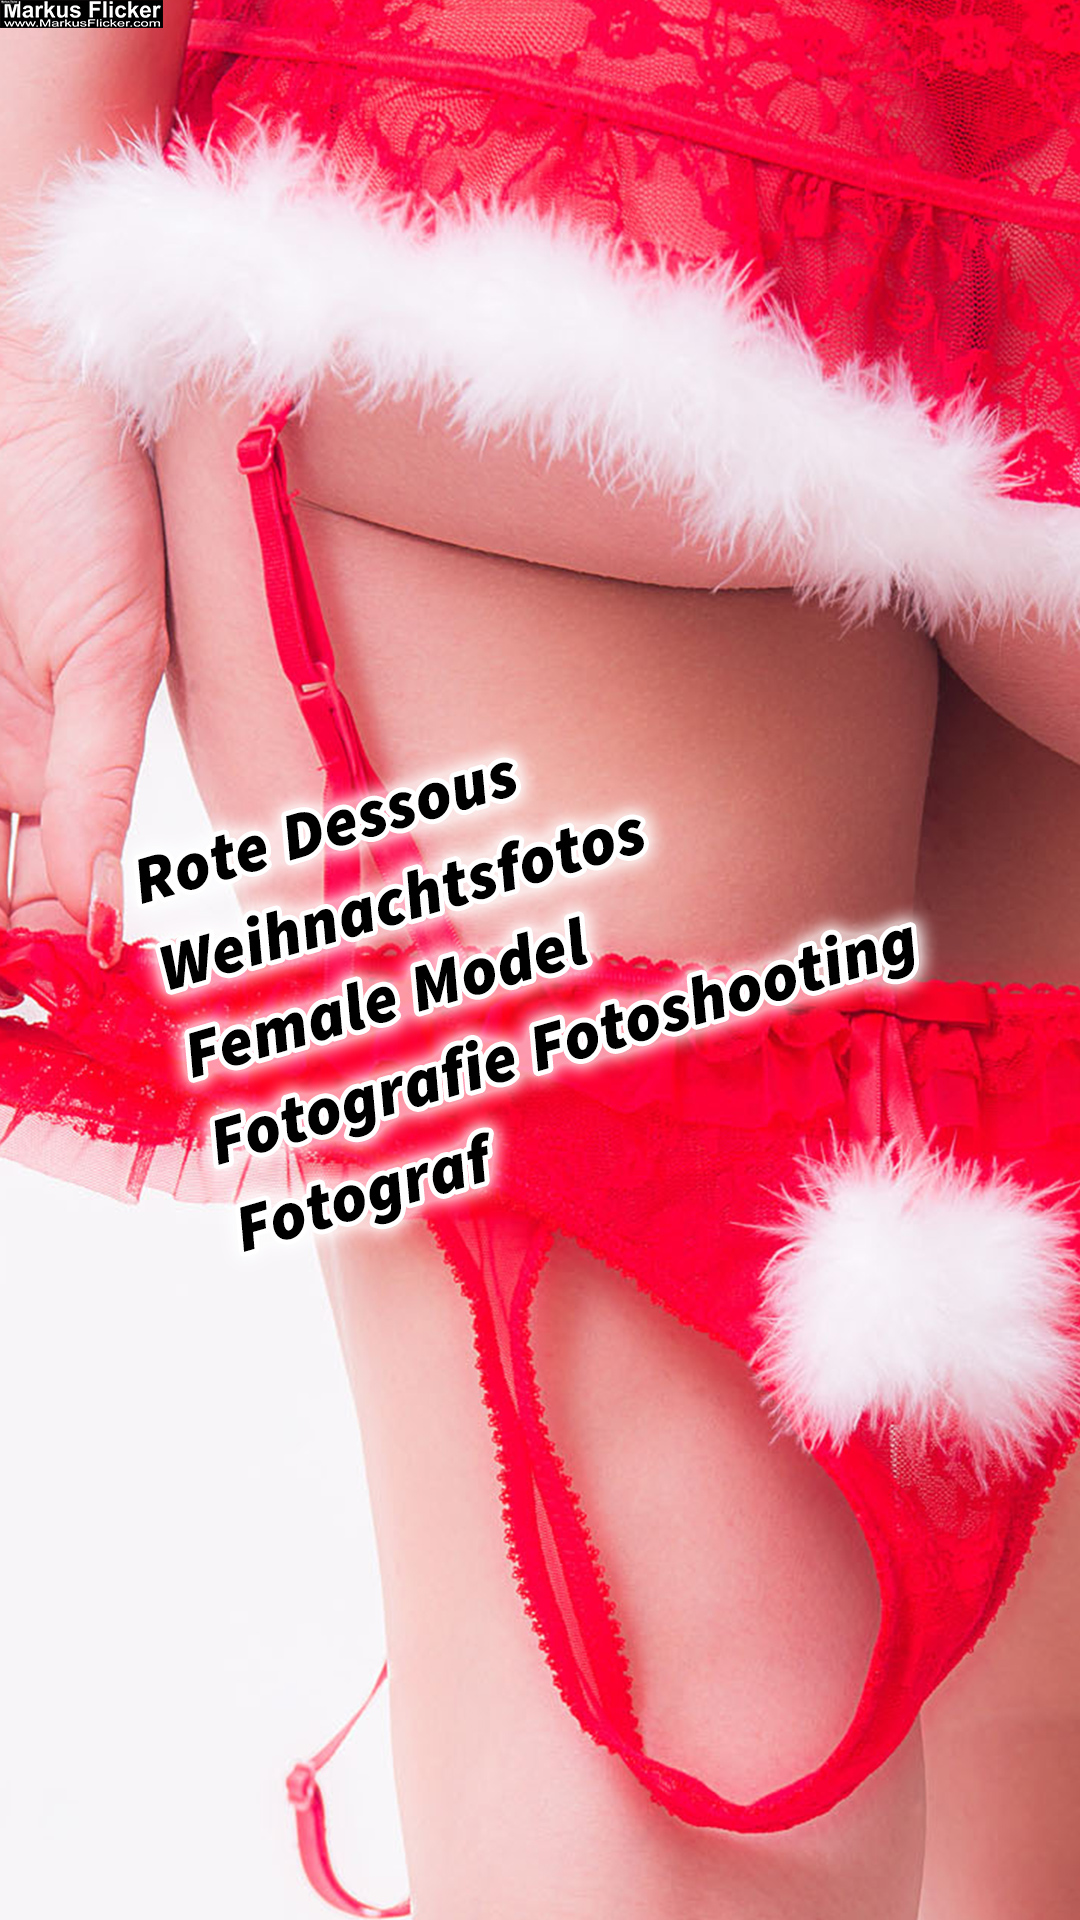 Ein Fest der Sinnlichkeit – Weihnachtsfotos mit roten Dessous Female Model Nicole Fotografie Fotoshooting Fotograf